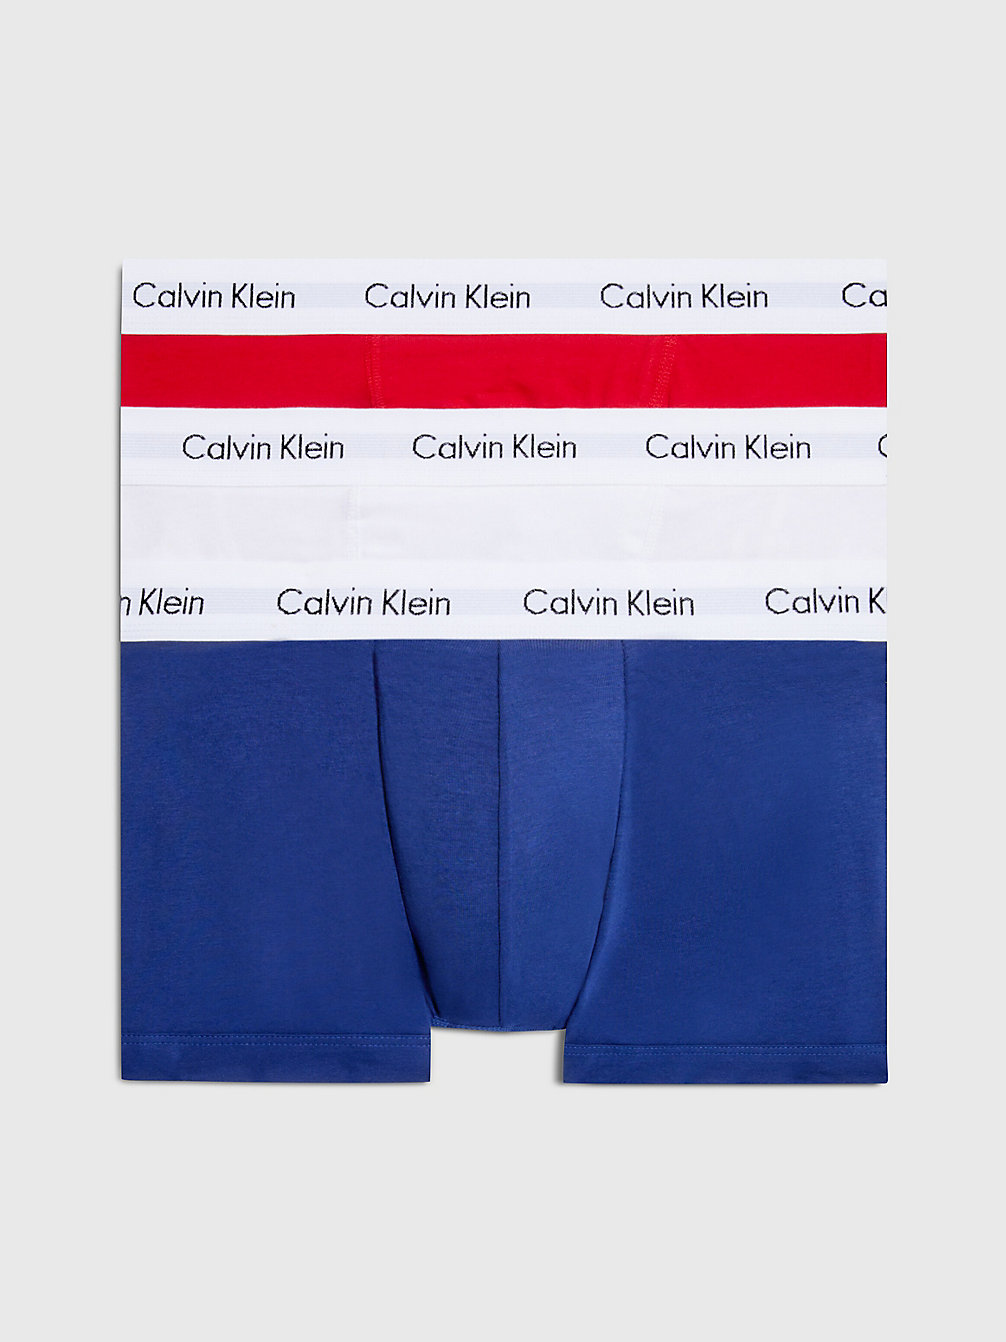 WHITE/RED GINGER/PYRO BLUE > Комплект боксеров низкой посадки 3 шт. - Cotton Stretch > undefined женщины - Calvin Klein